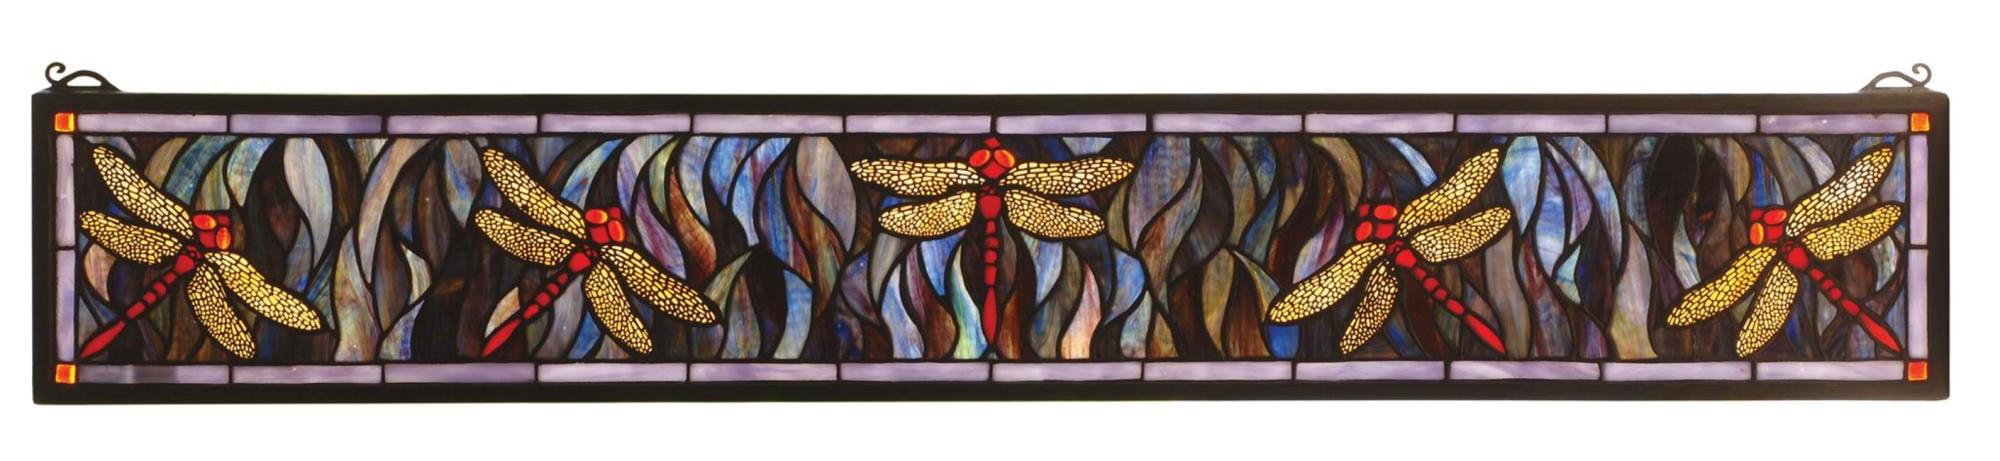 40"W X 6"H Tiffany Dragonfly Stained Glass Window